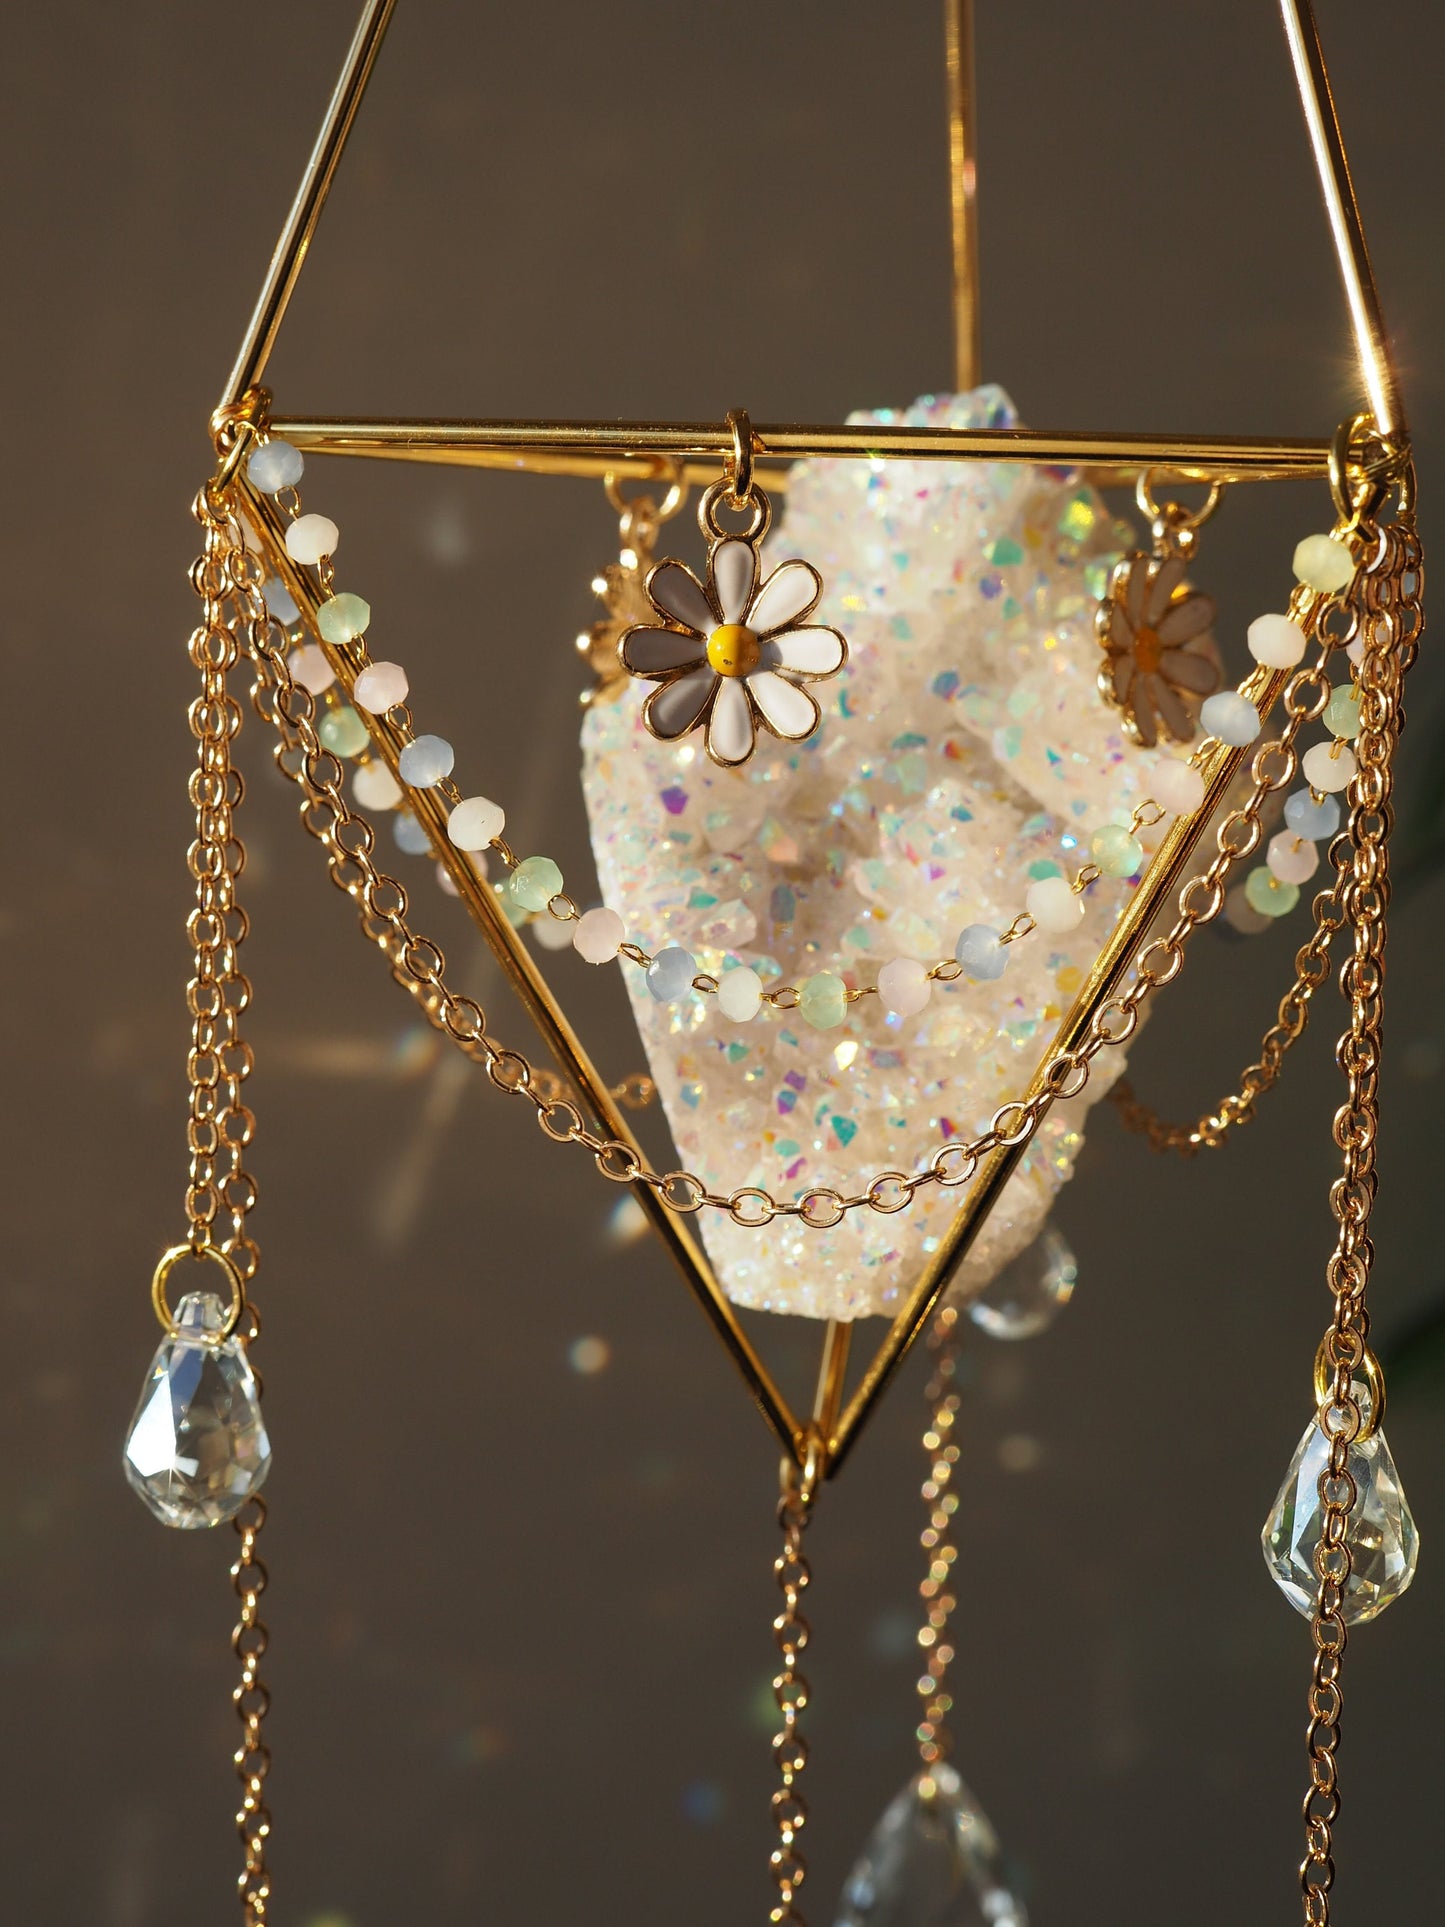 Daisy pendant Suncatcher Spring home decor gemstones for Mother's day gift for Mom